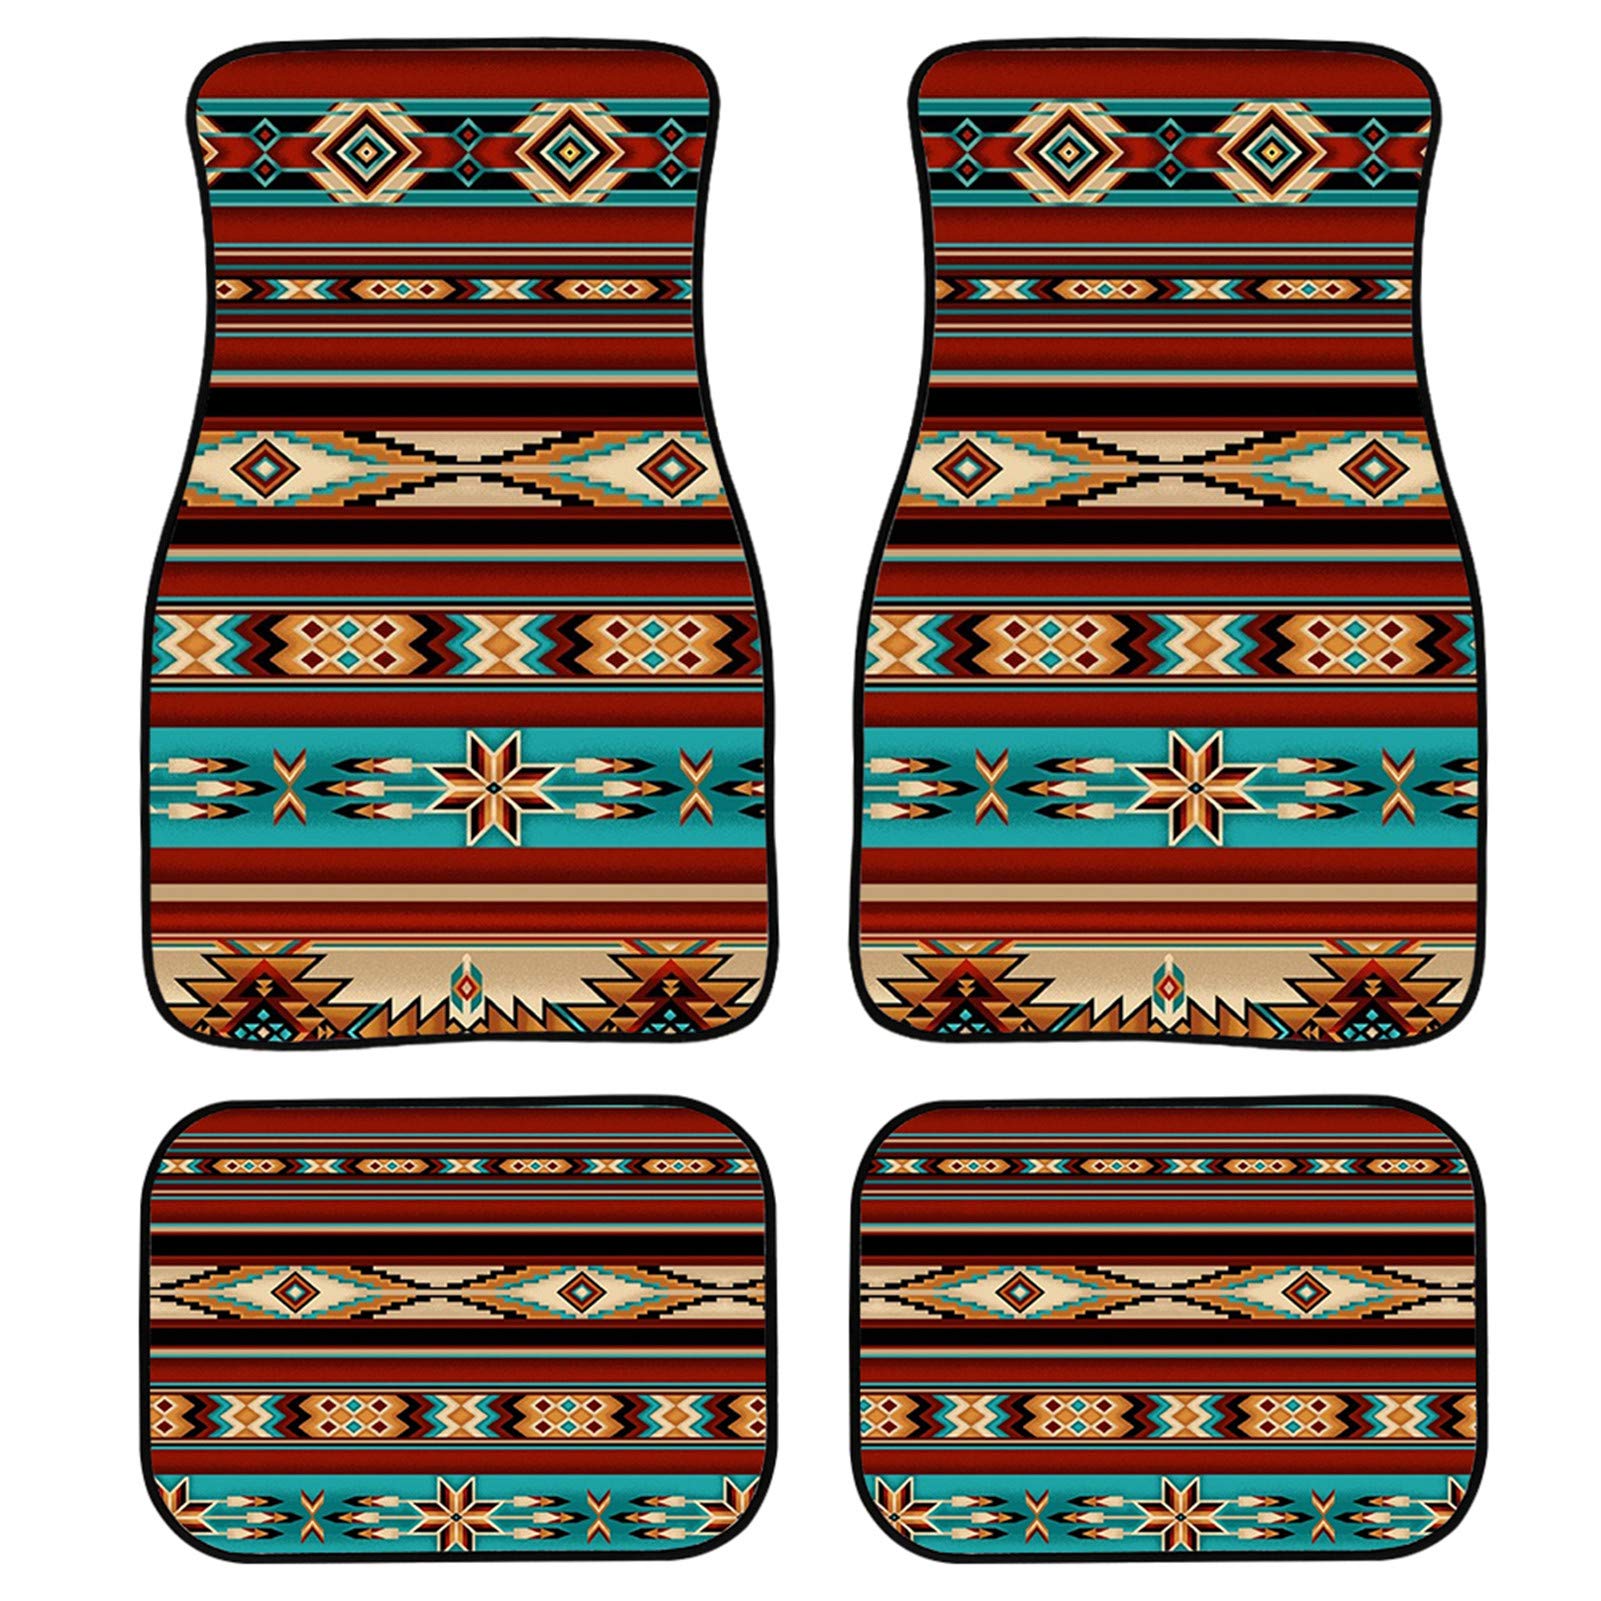 Auto-Fußmatten, 4-teiliges Set für Autos, LKWs, Südwesten, Tribal, Azteken, Ethno-Muster, Vorder- und Rückseite, Gummi-Rückseite, Autozubehör von TradesForU